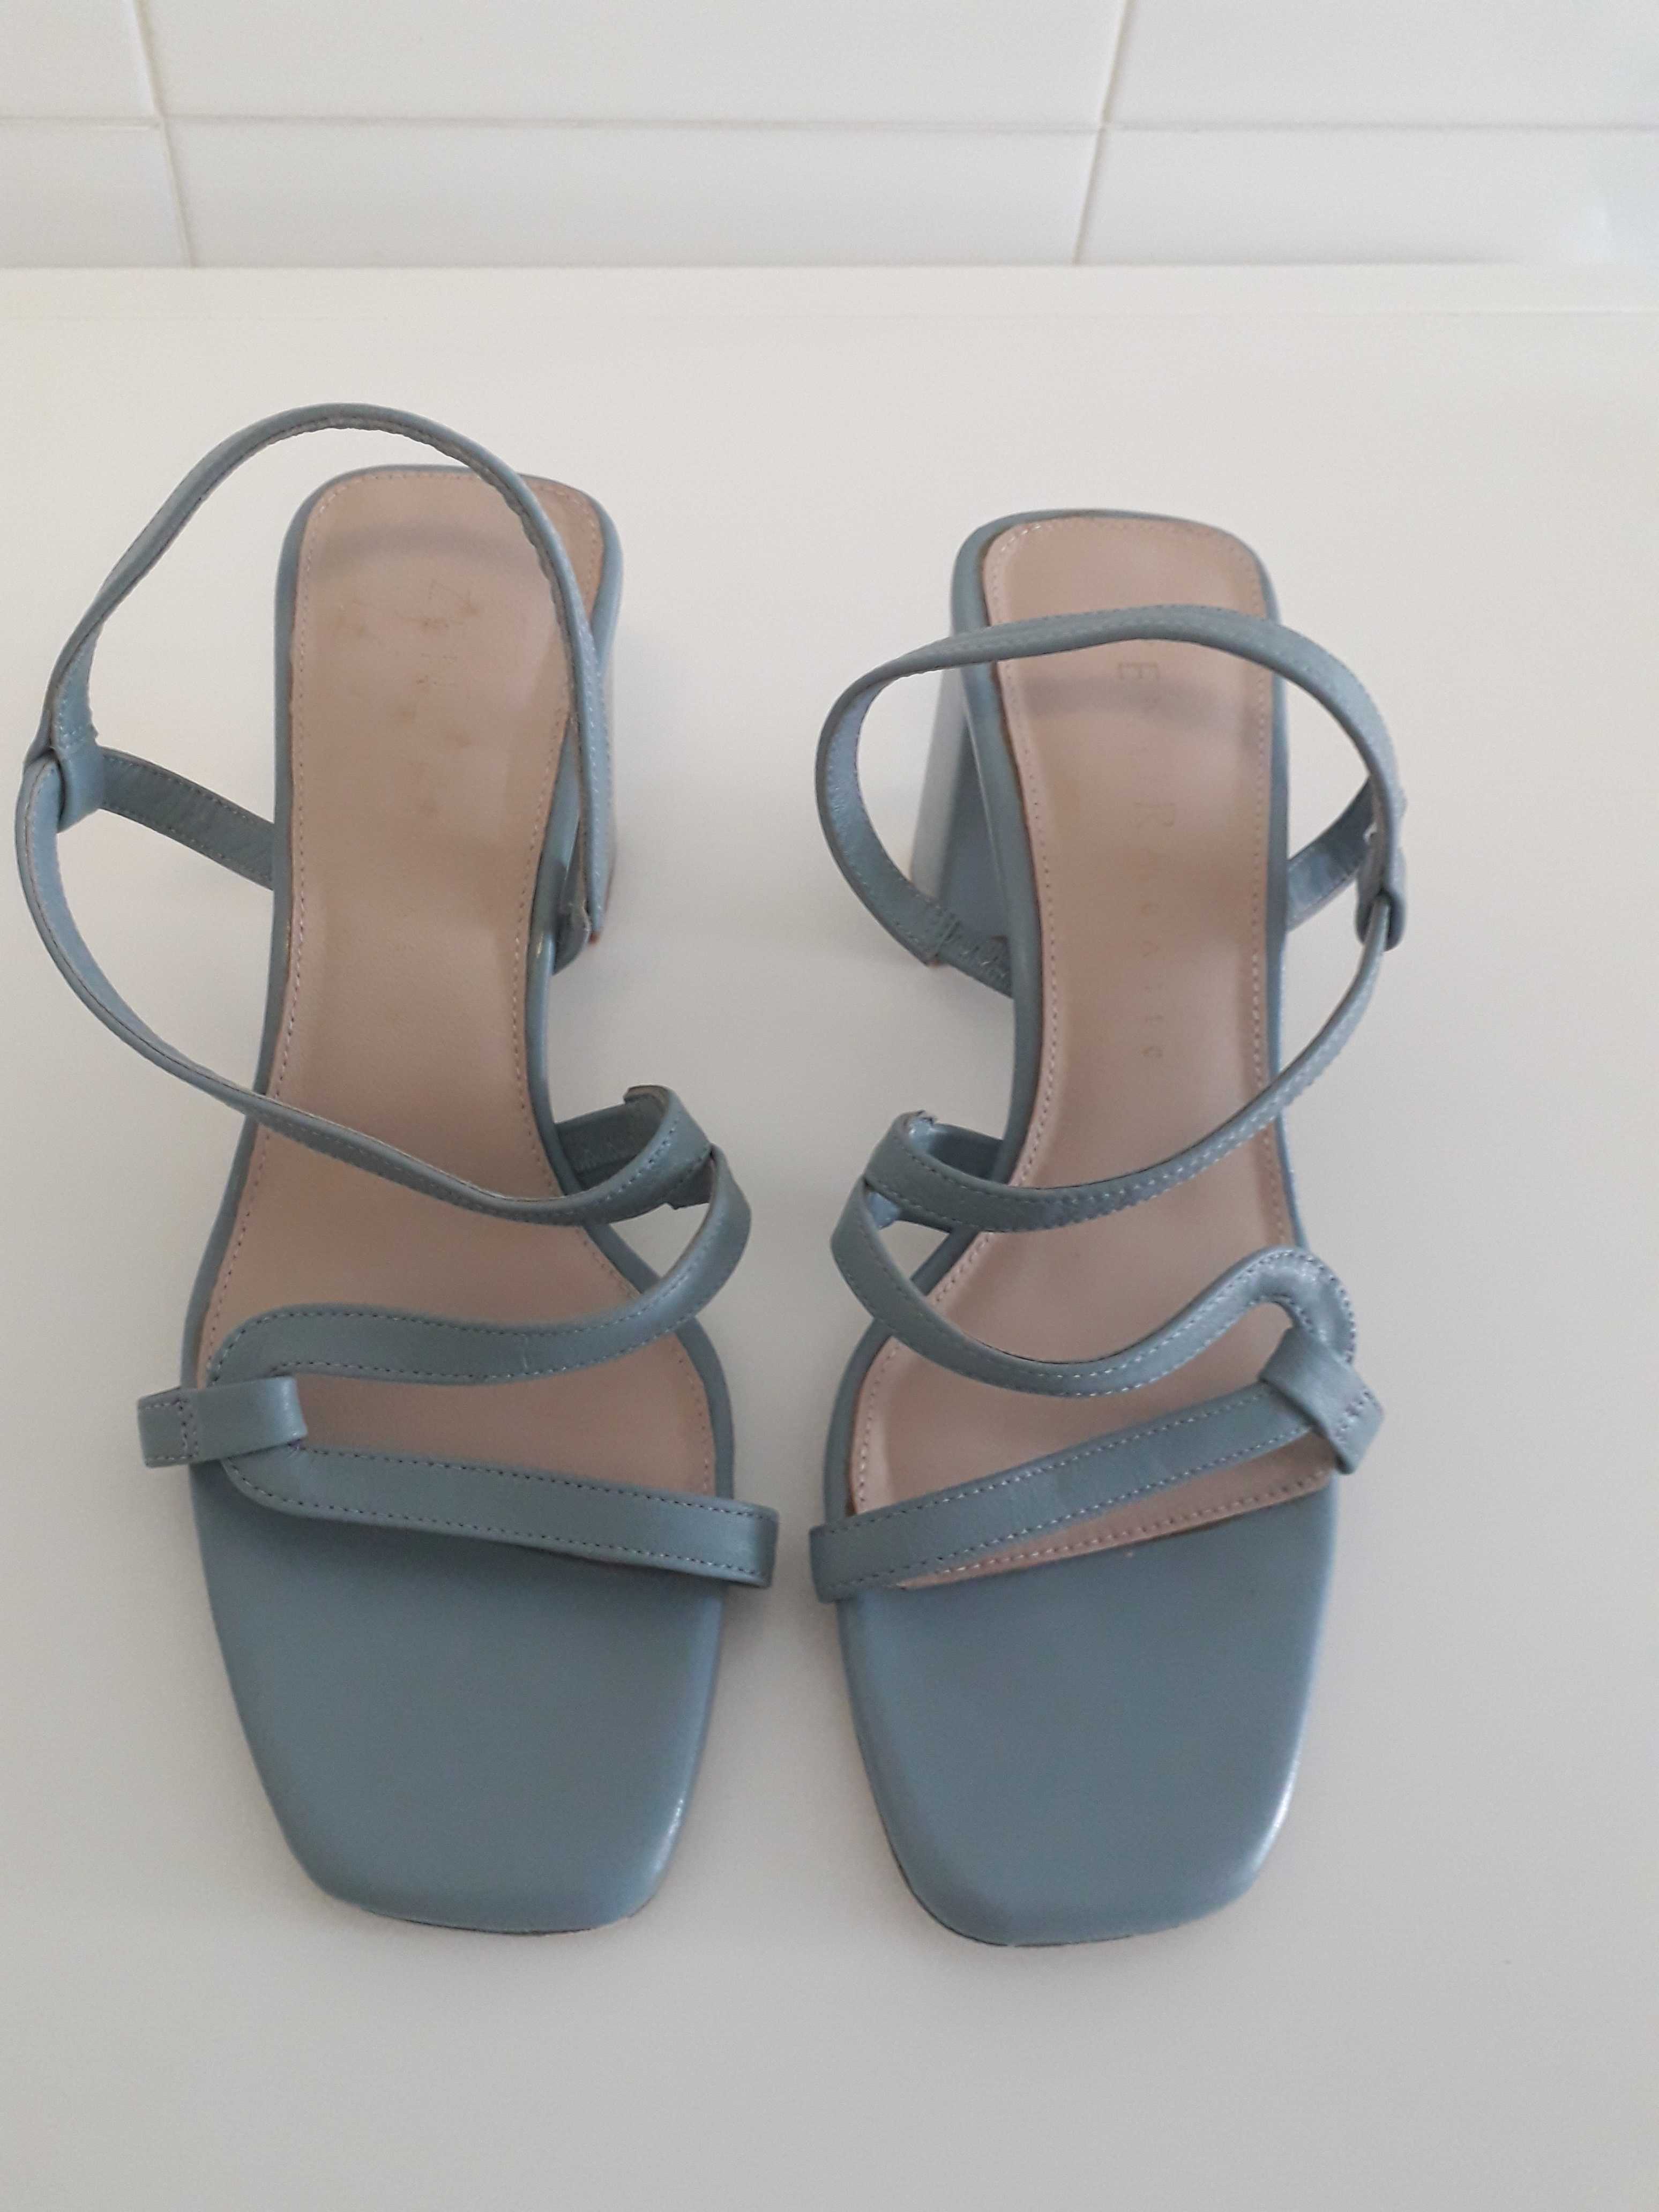 Sandálias azuis claras (NOVAS) tam.36